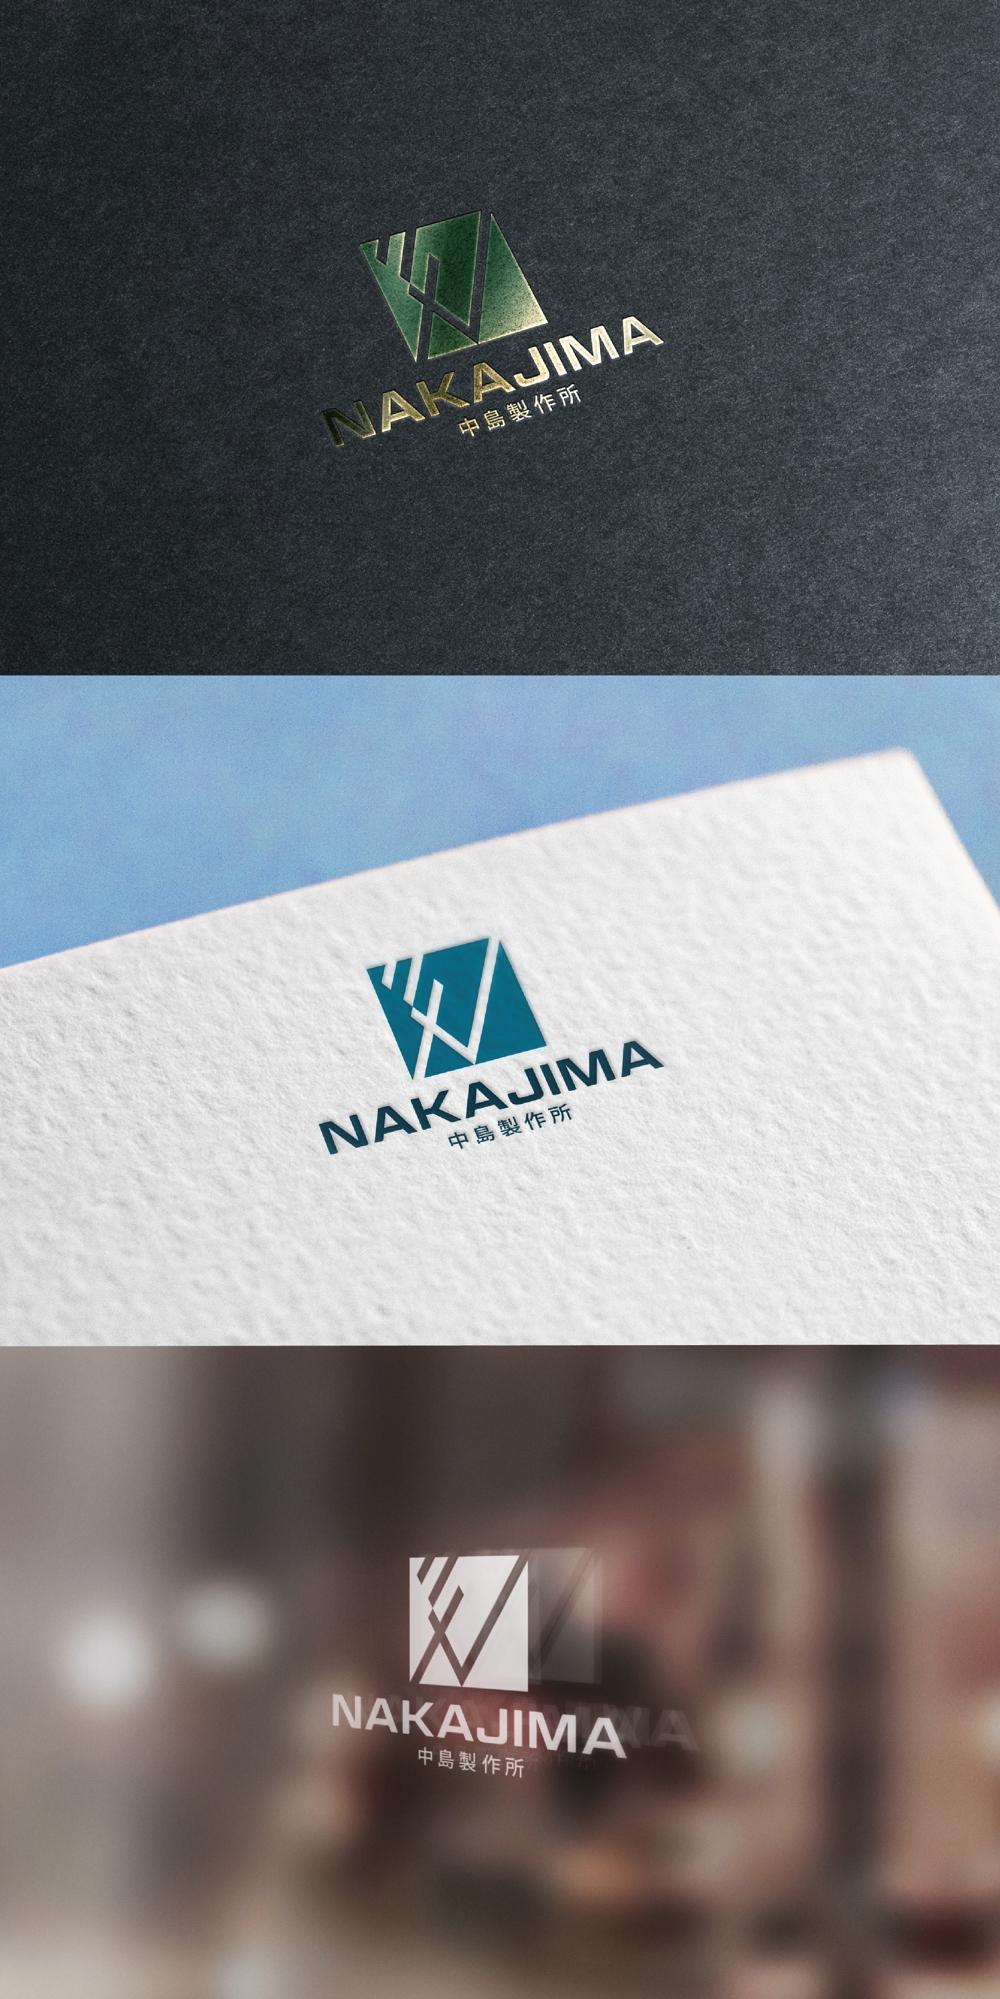 NAKAJIMA _logo01_01.jpg